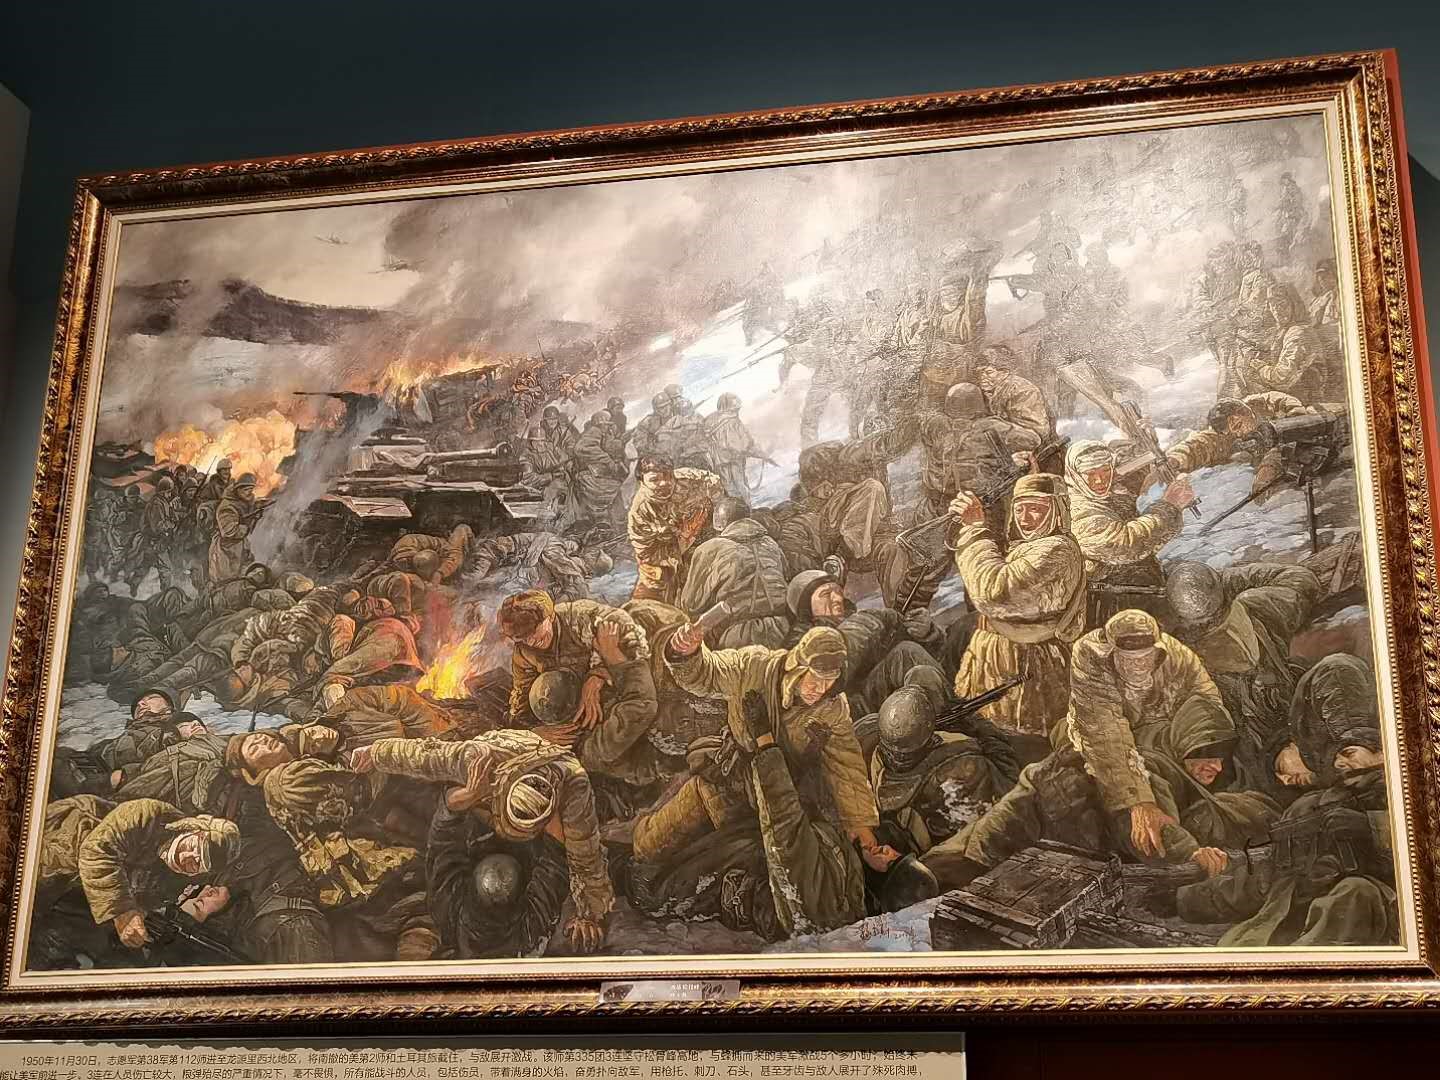 志愿军战士的装备,坚守松骨峰的油画,鏖战长津湖的景观……在展厅现场